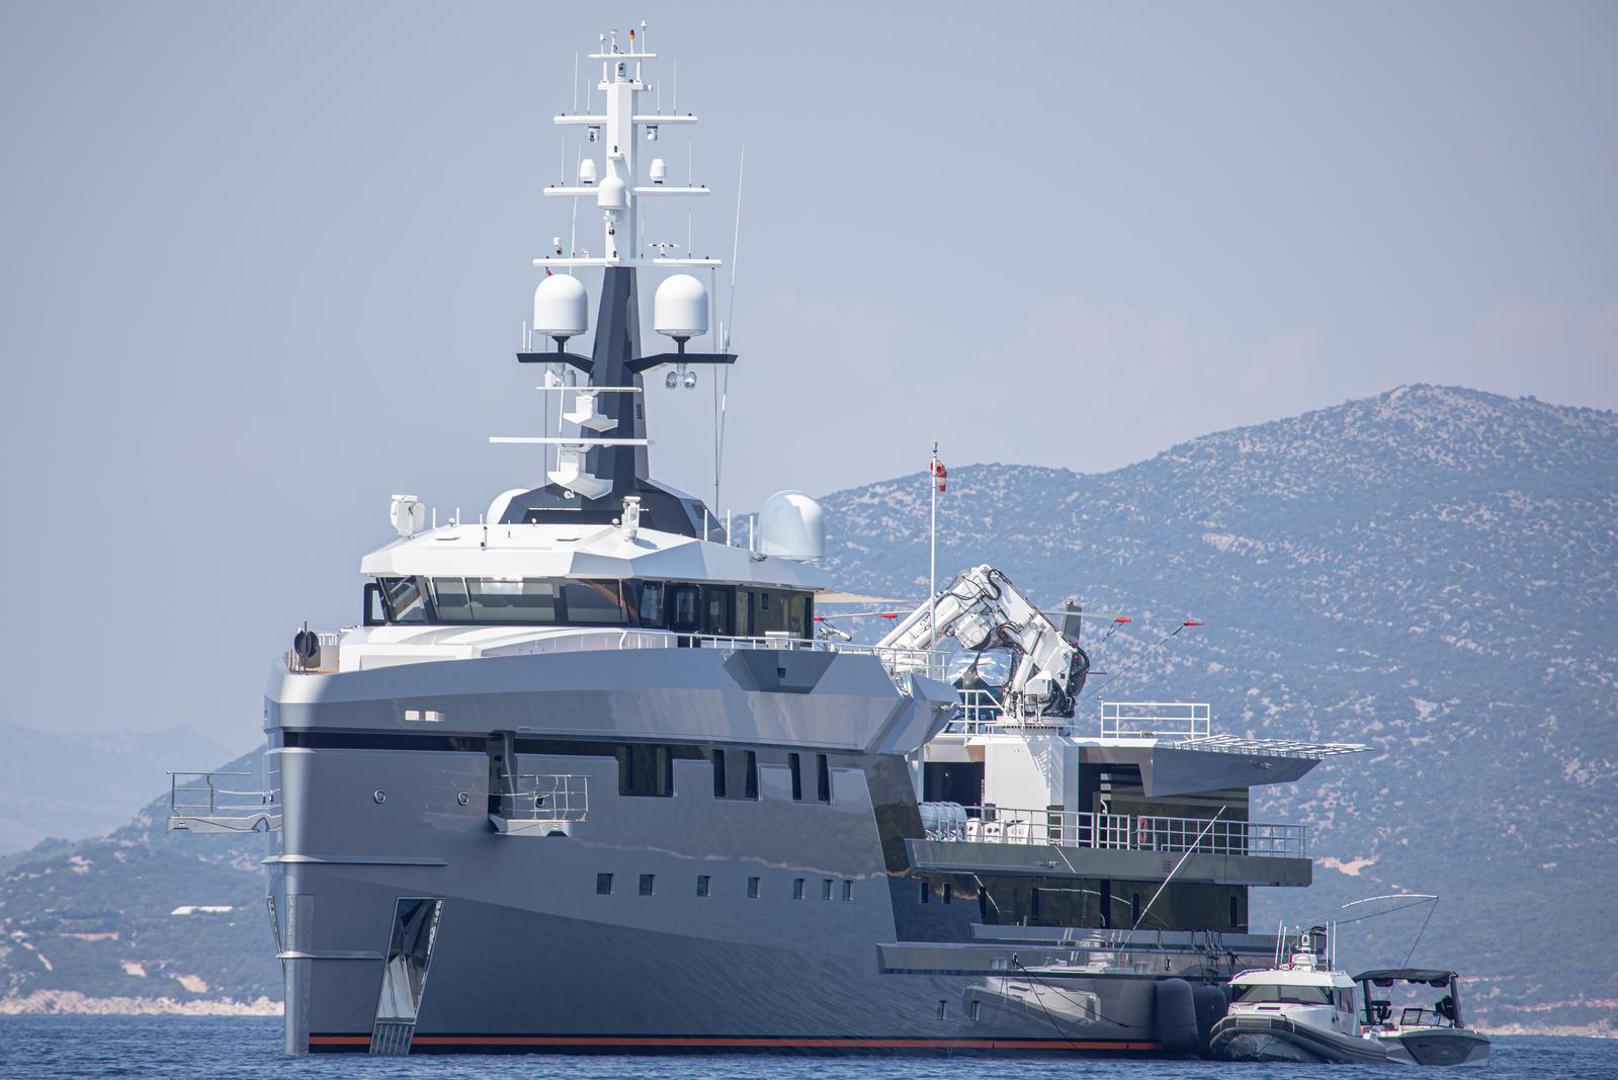 Ovom jahtom Bezos je proteklih tjedana plovio Sredozemljem, pa je bilo moguće vidjeti je u Grčkoj i Italiji. U Grčkoj mu je društvo pravila i slavna glumica Demi Moore